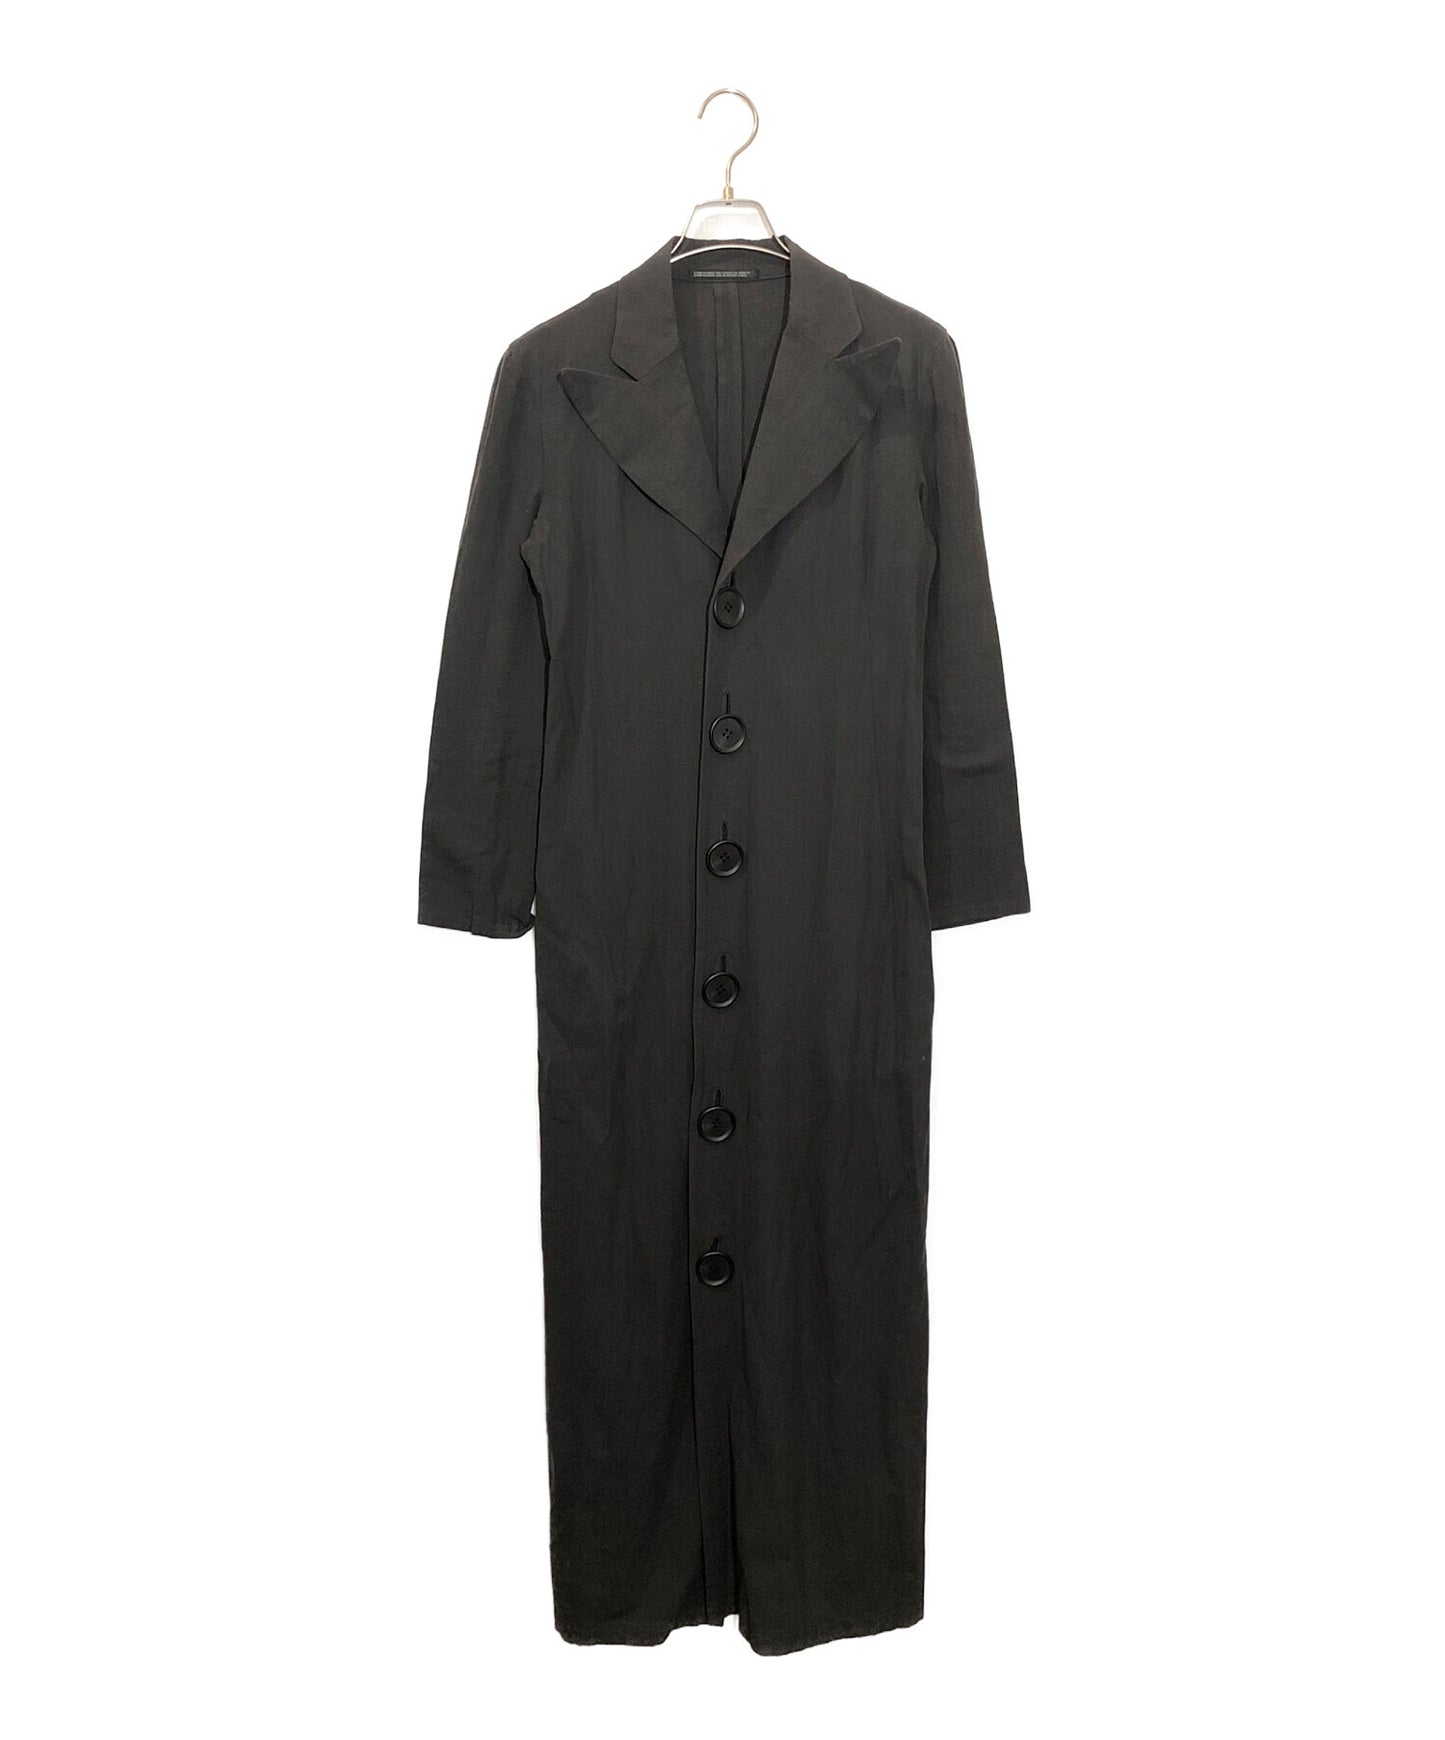 Y 's Peaked Lapel Shirtcoat Yu-D01-008